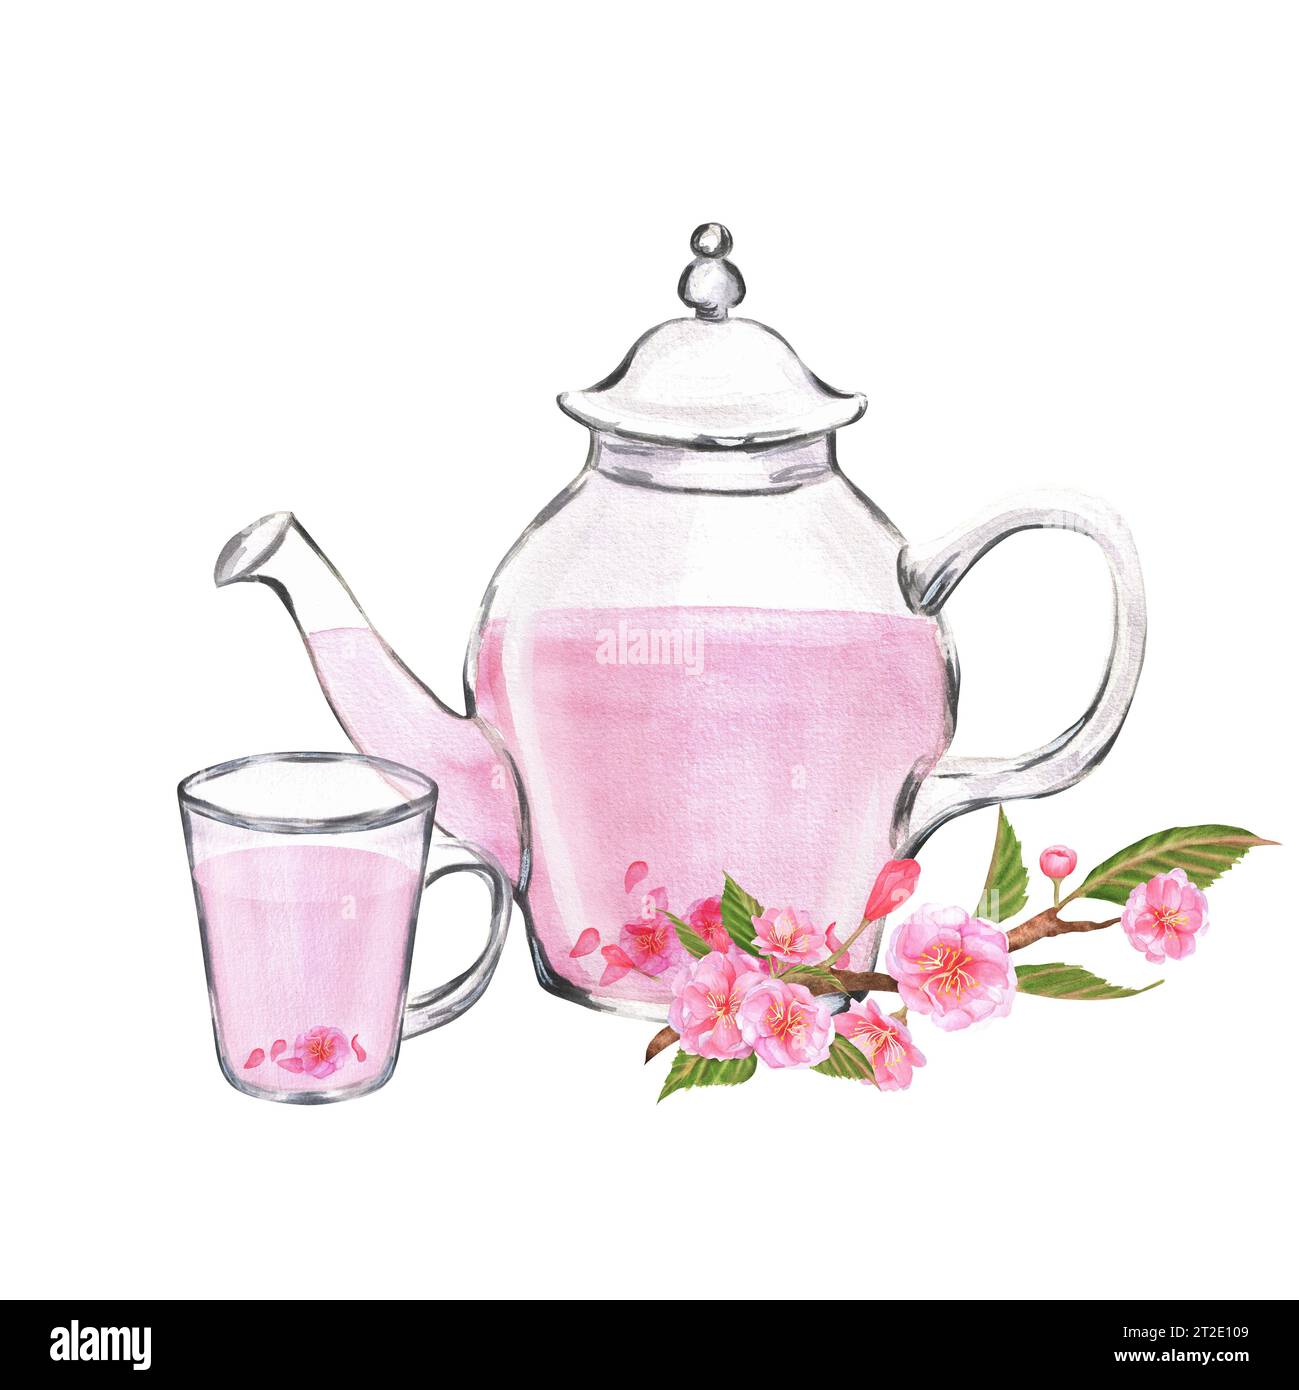 Illustrazione ad acquerello disegnata a mano. Teiera di vetro e una tazza con tè sakura e ramo sakura vicino ad essa Foto Stock